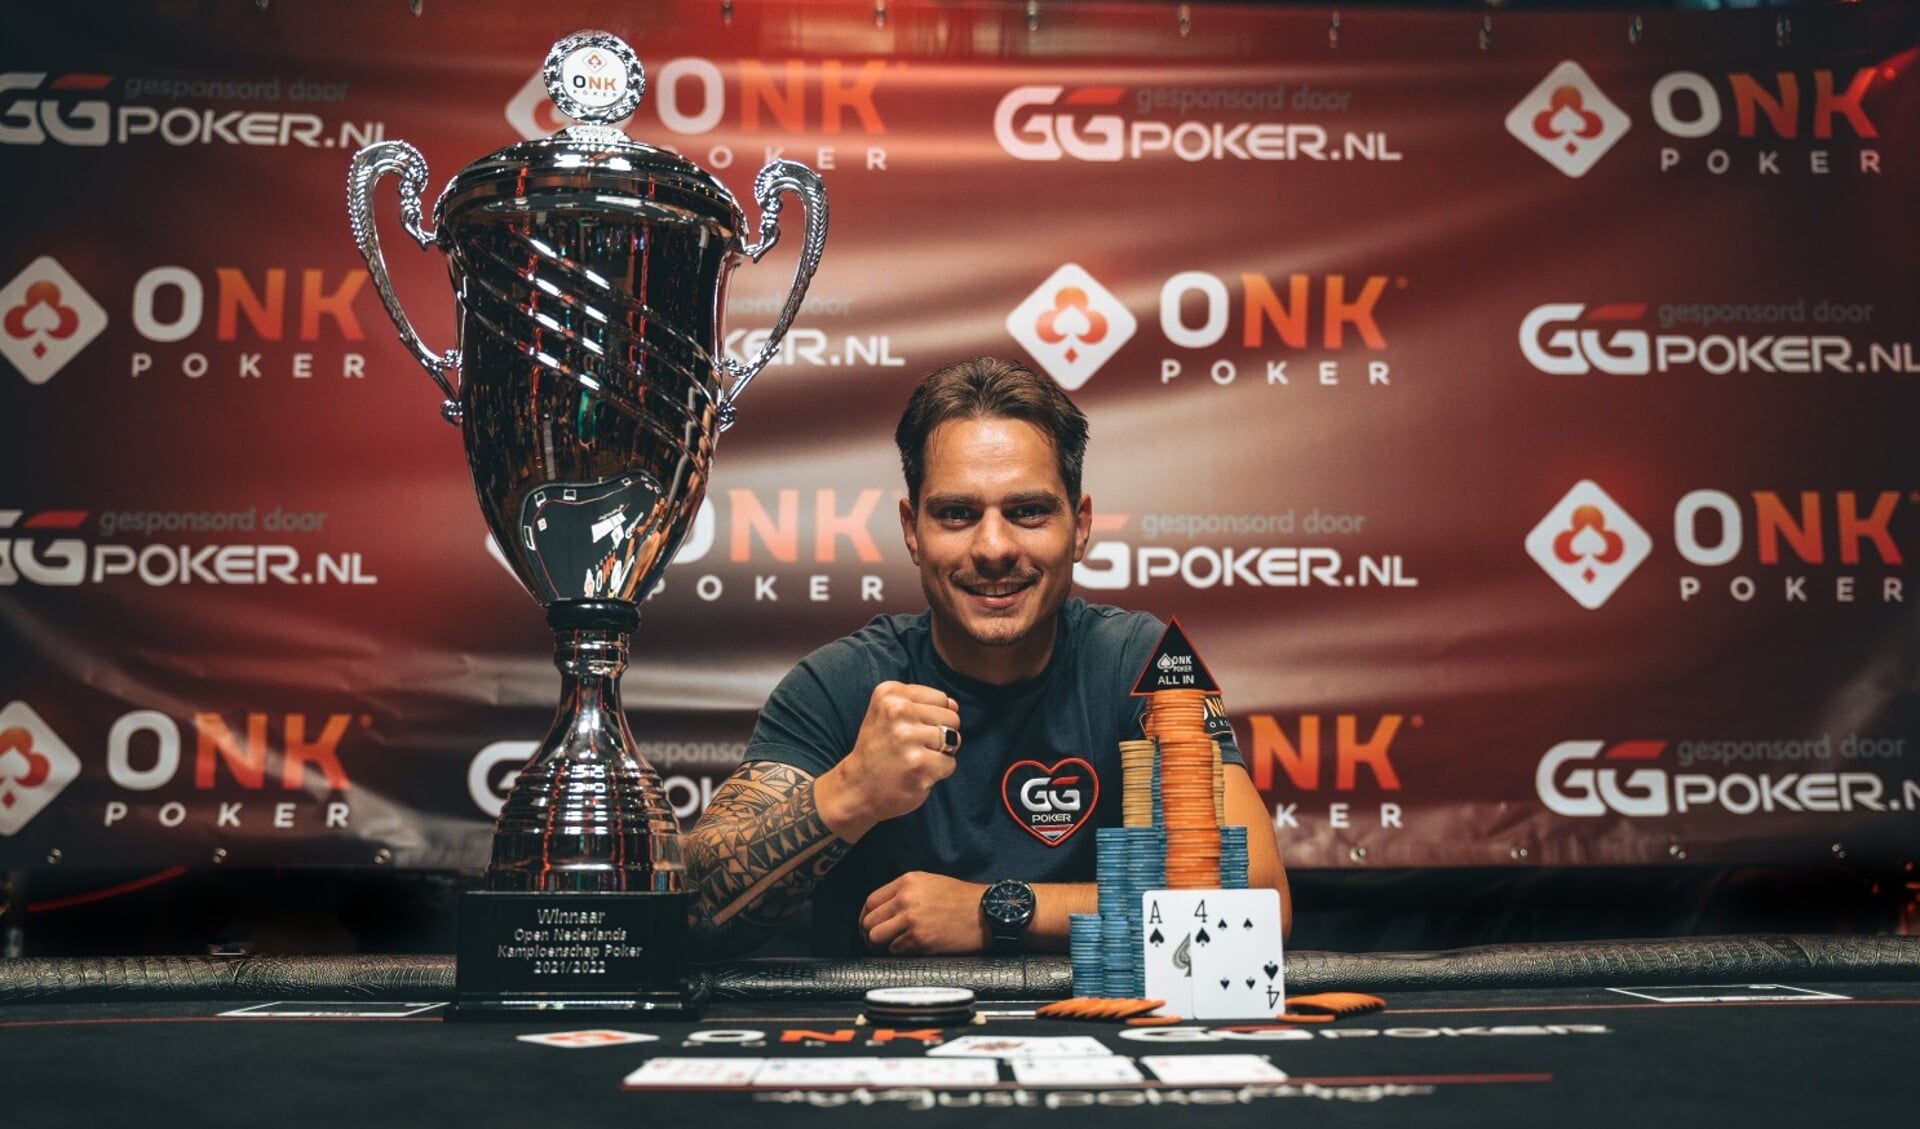 Pokerkampioen van Nederland Vincent Vos 